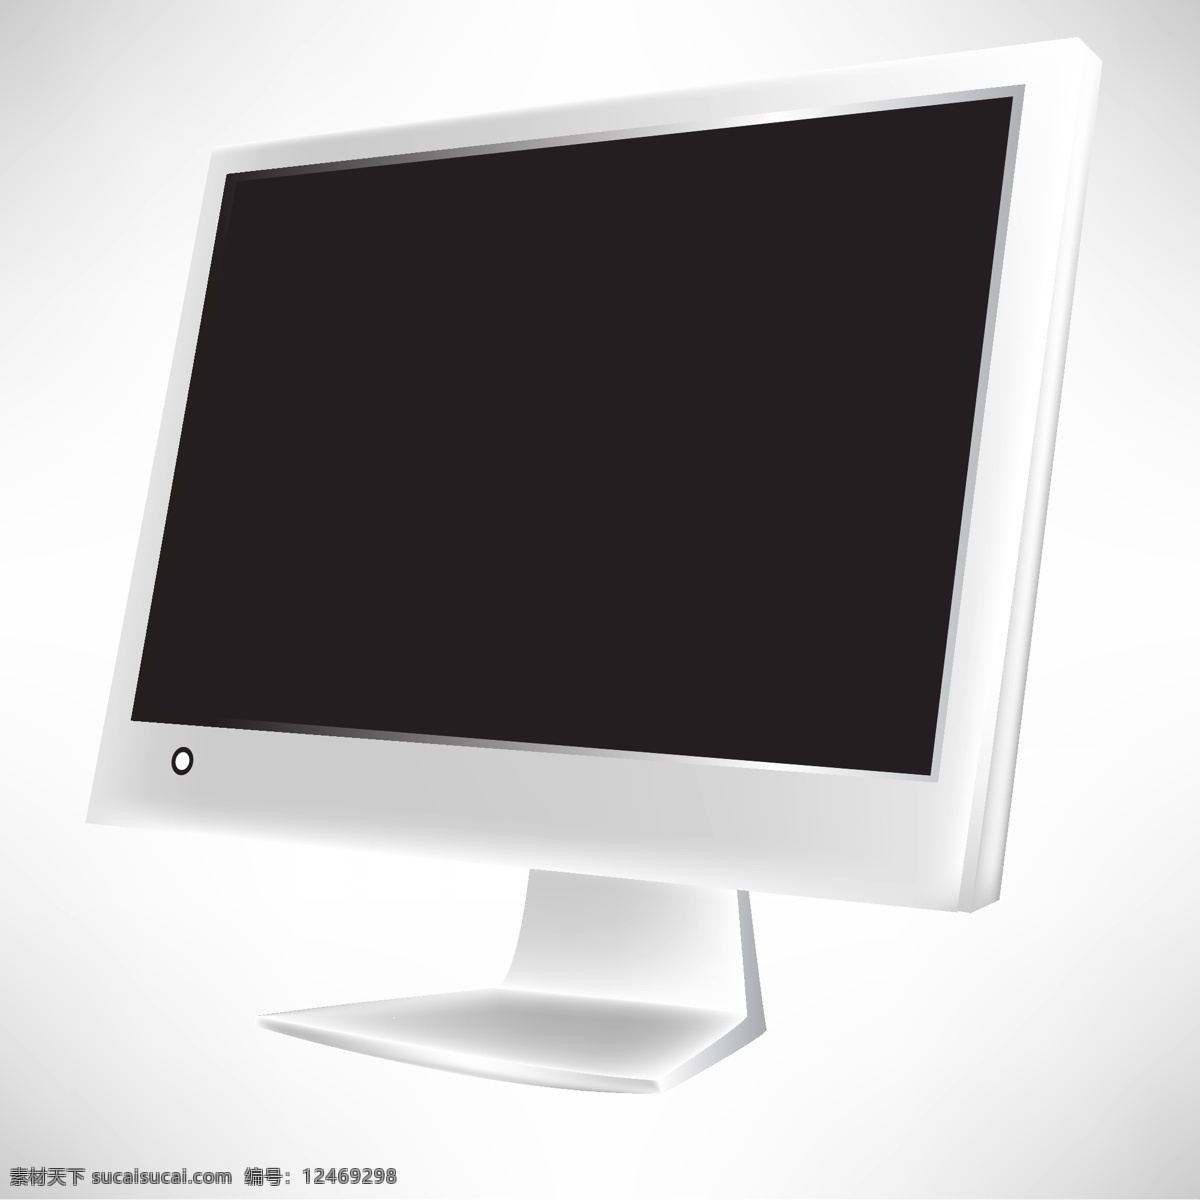 白色 外 框 电脑 显示器 矢量 按钮 底座 开关 外框 液晶 矢量图 其他矢量图